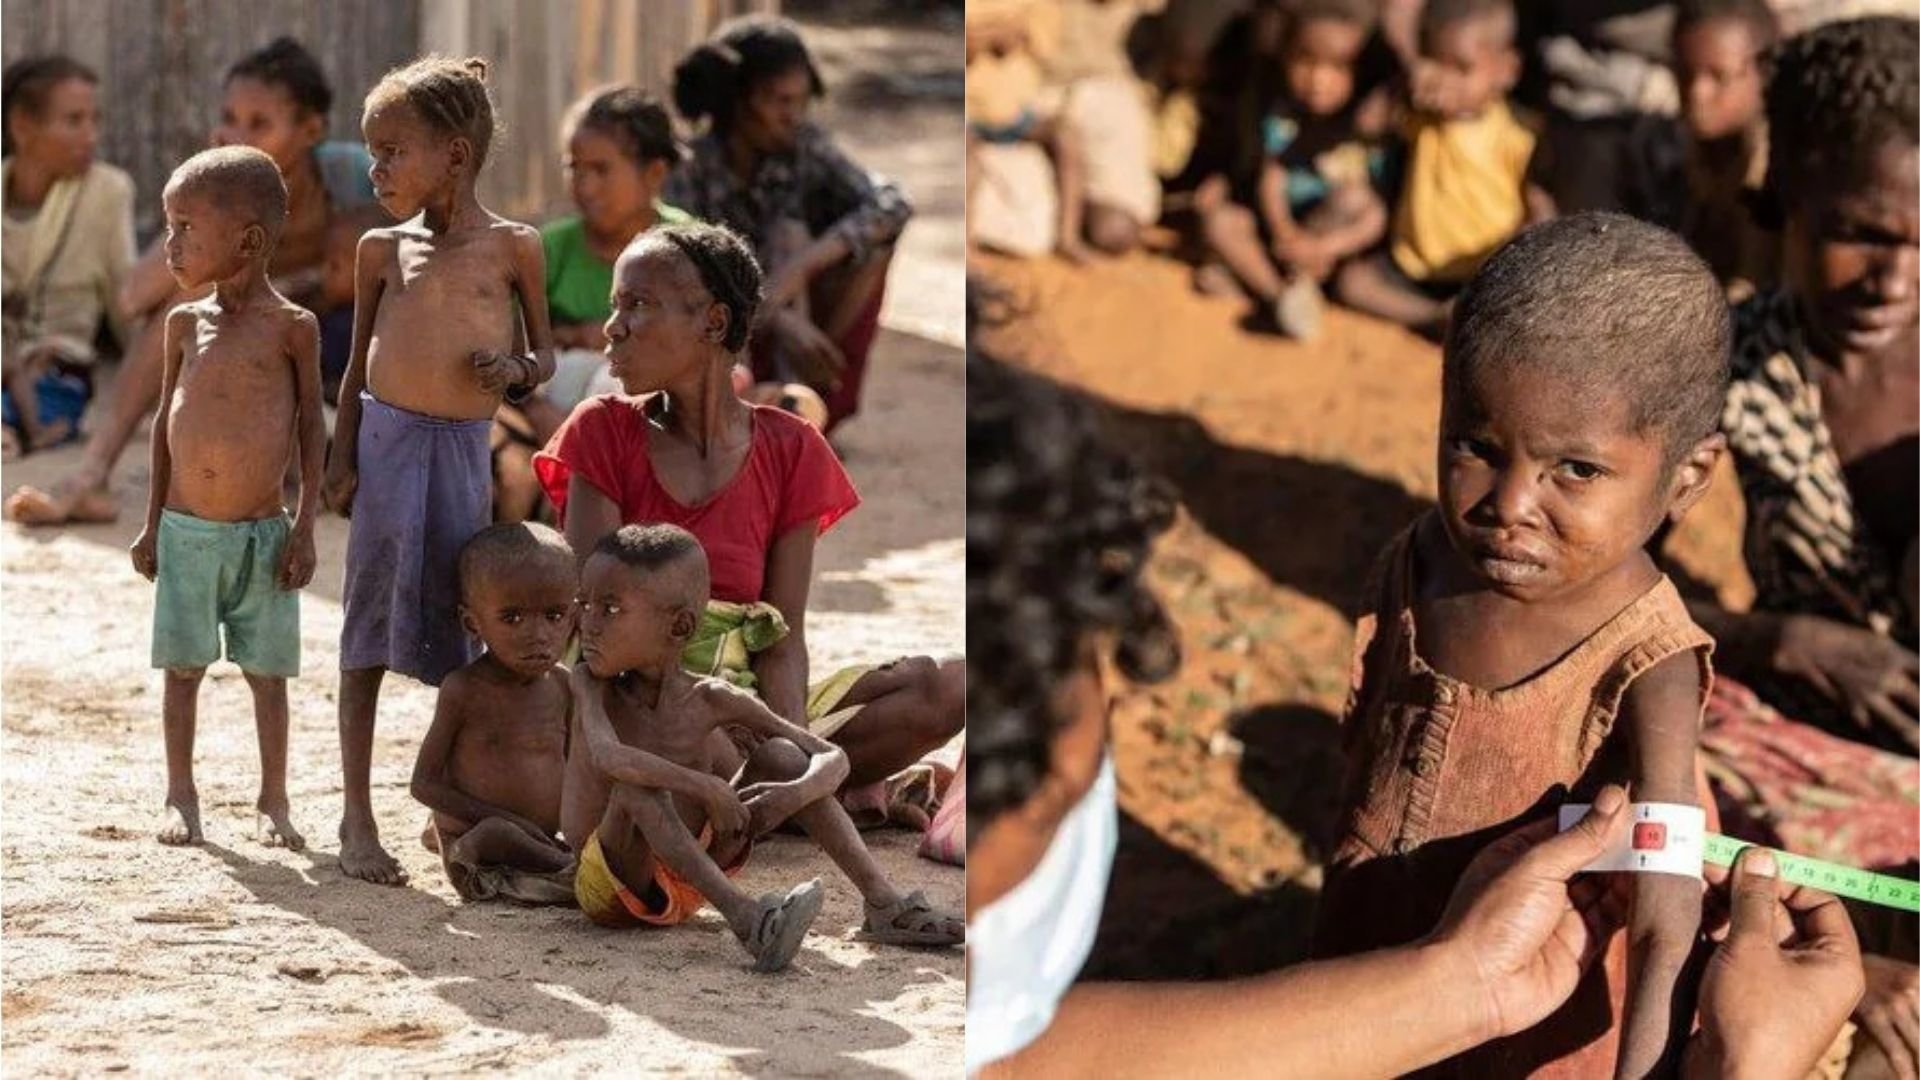 Μαδαγασκάρη, το πρώτο θύμα της κλιματικής κρίσης: Στα όρια του λιμού 1.5 εκατομμύριο άνθρωποι